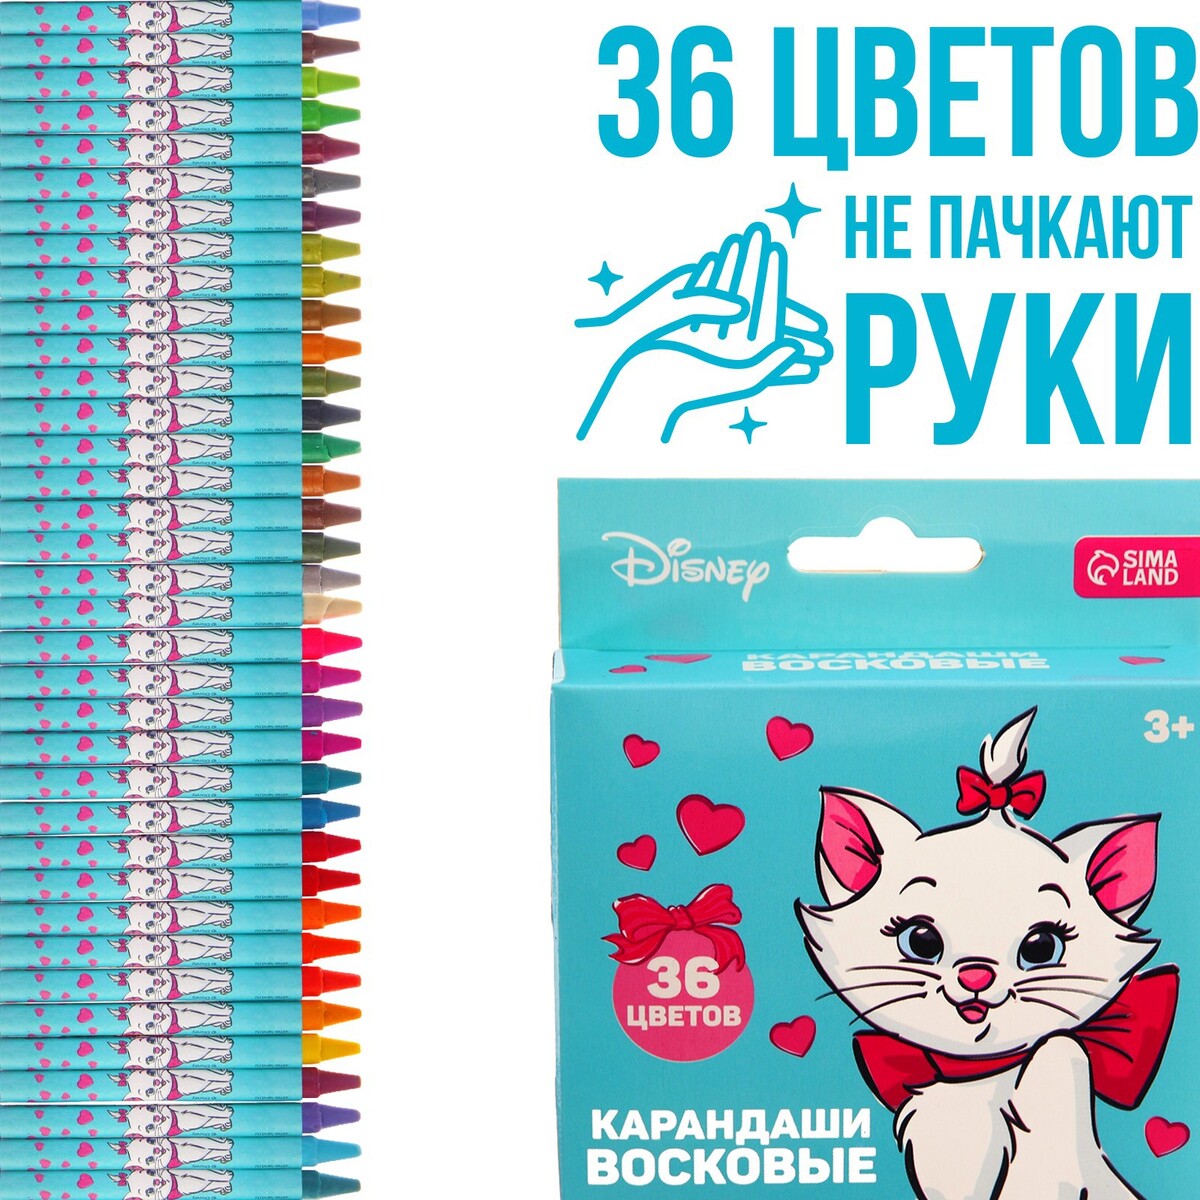 Восковые карандаши, набор 36 цветов, коты аристократы Disney